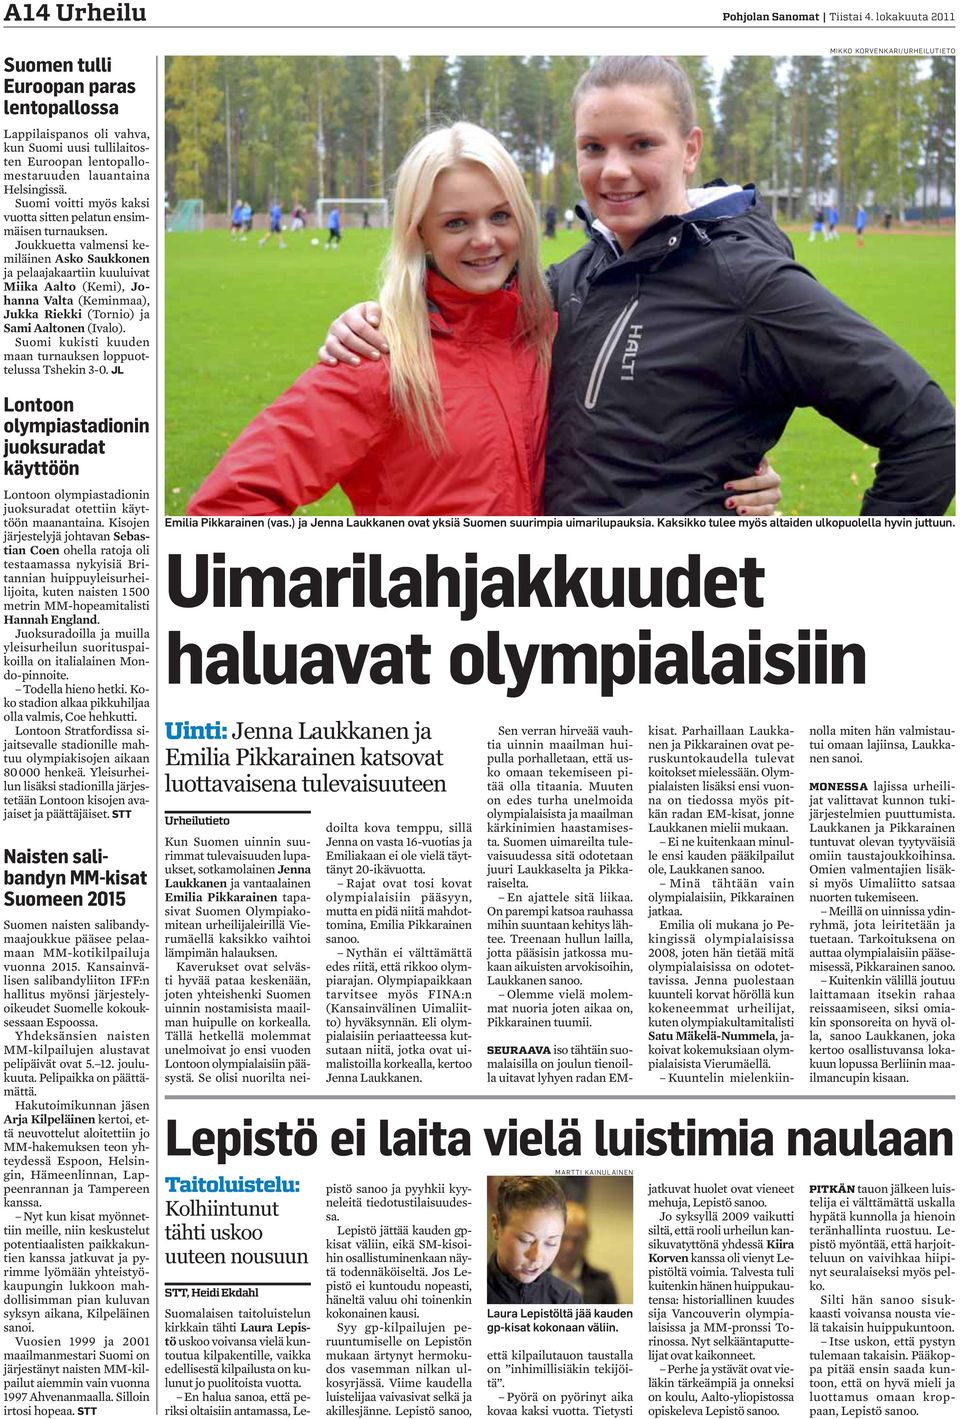 Suomi voitti myös kaksi vuotta sitten pelatun ensimmäisen turnauksen.